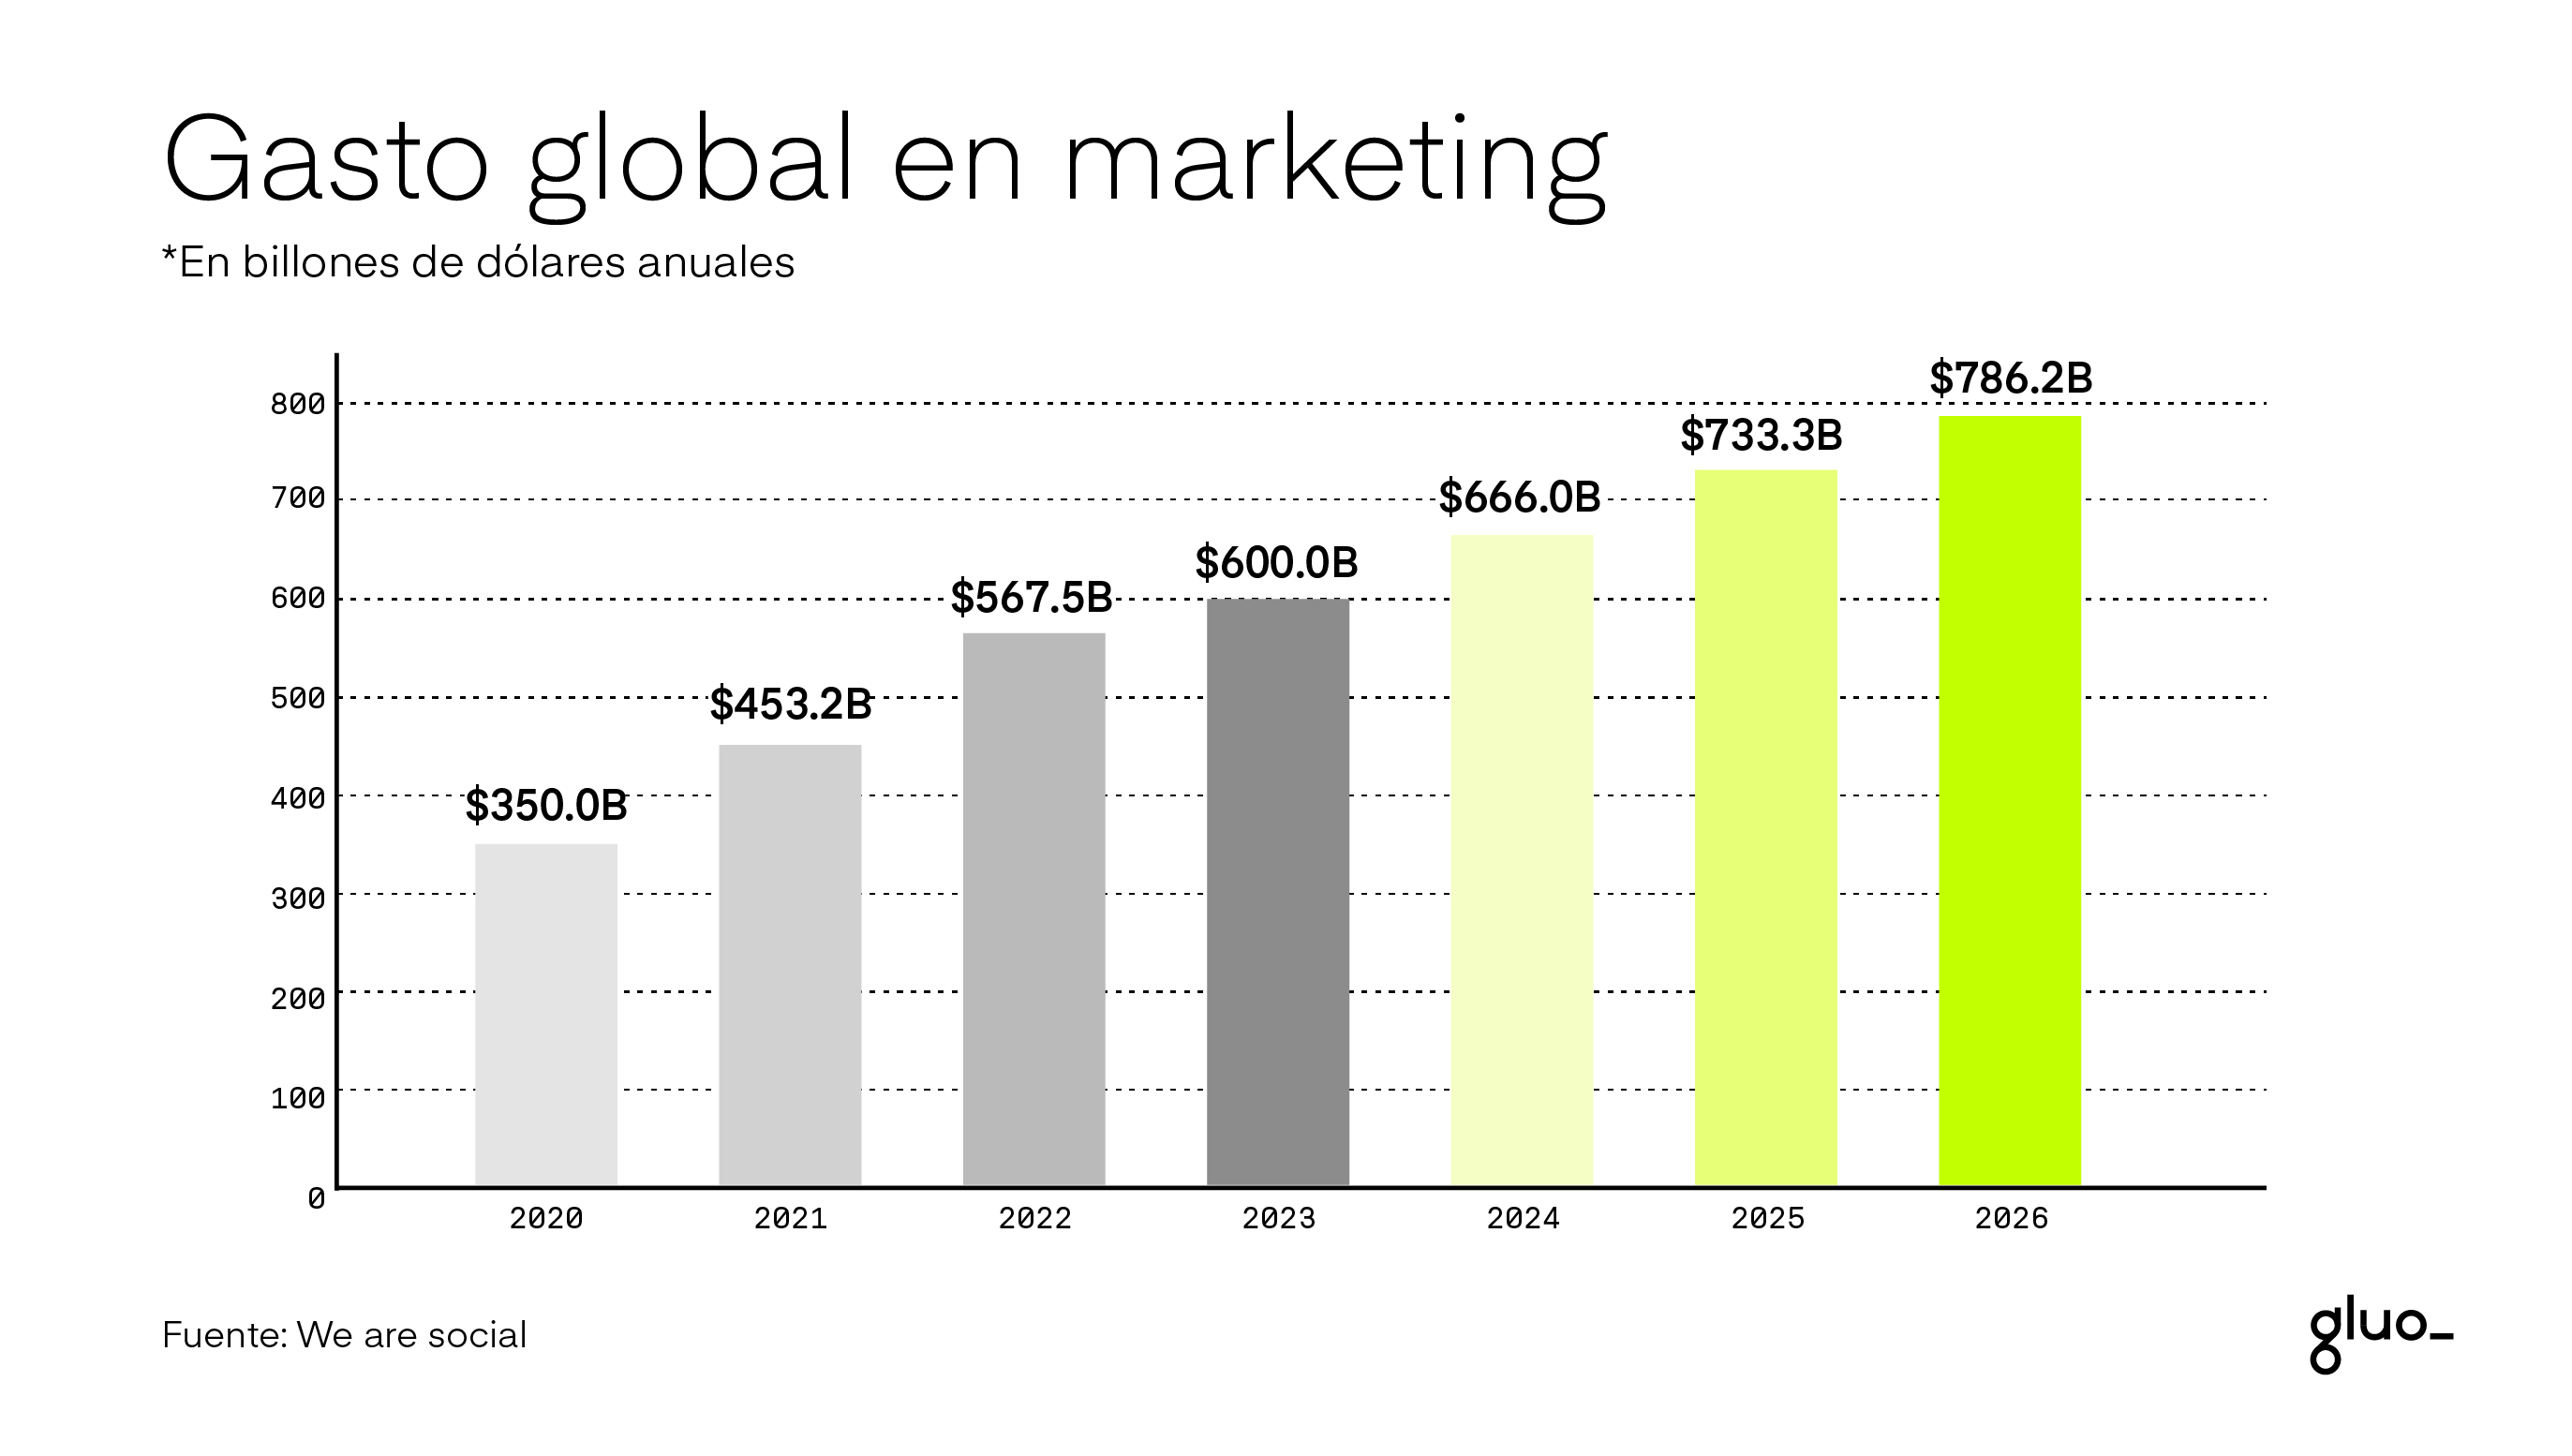 gasto global en marketing